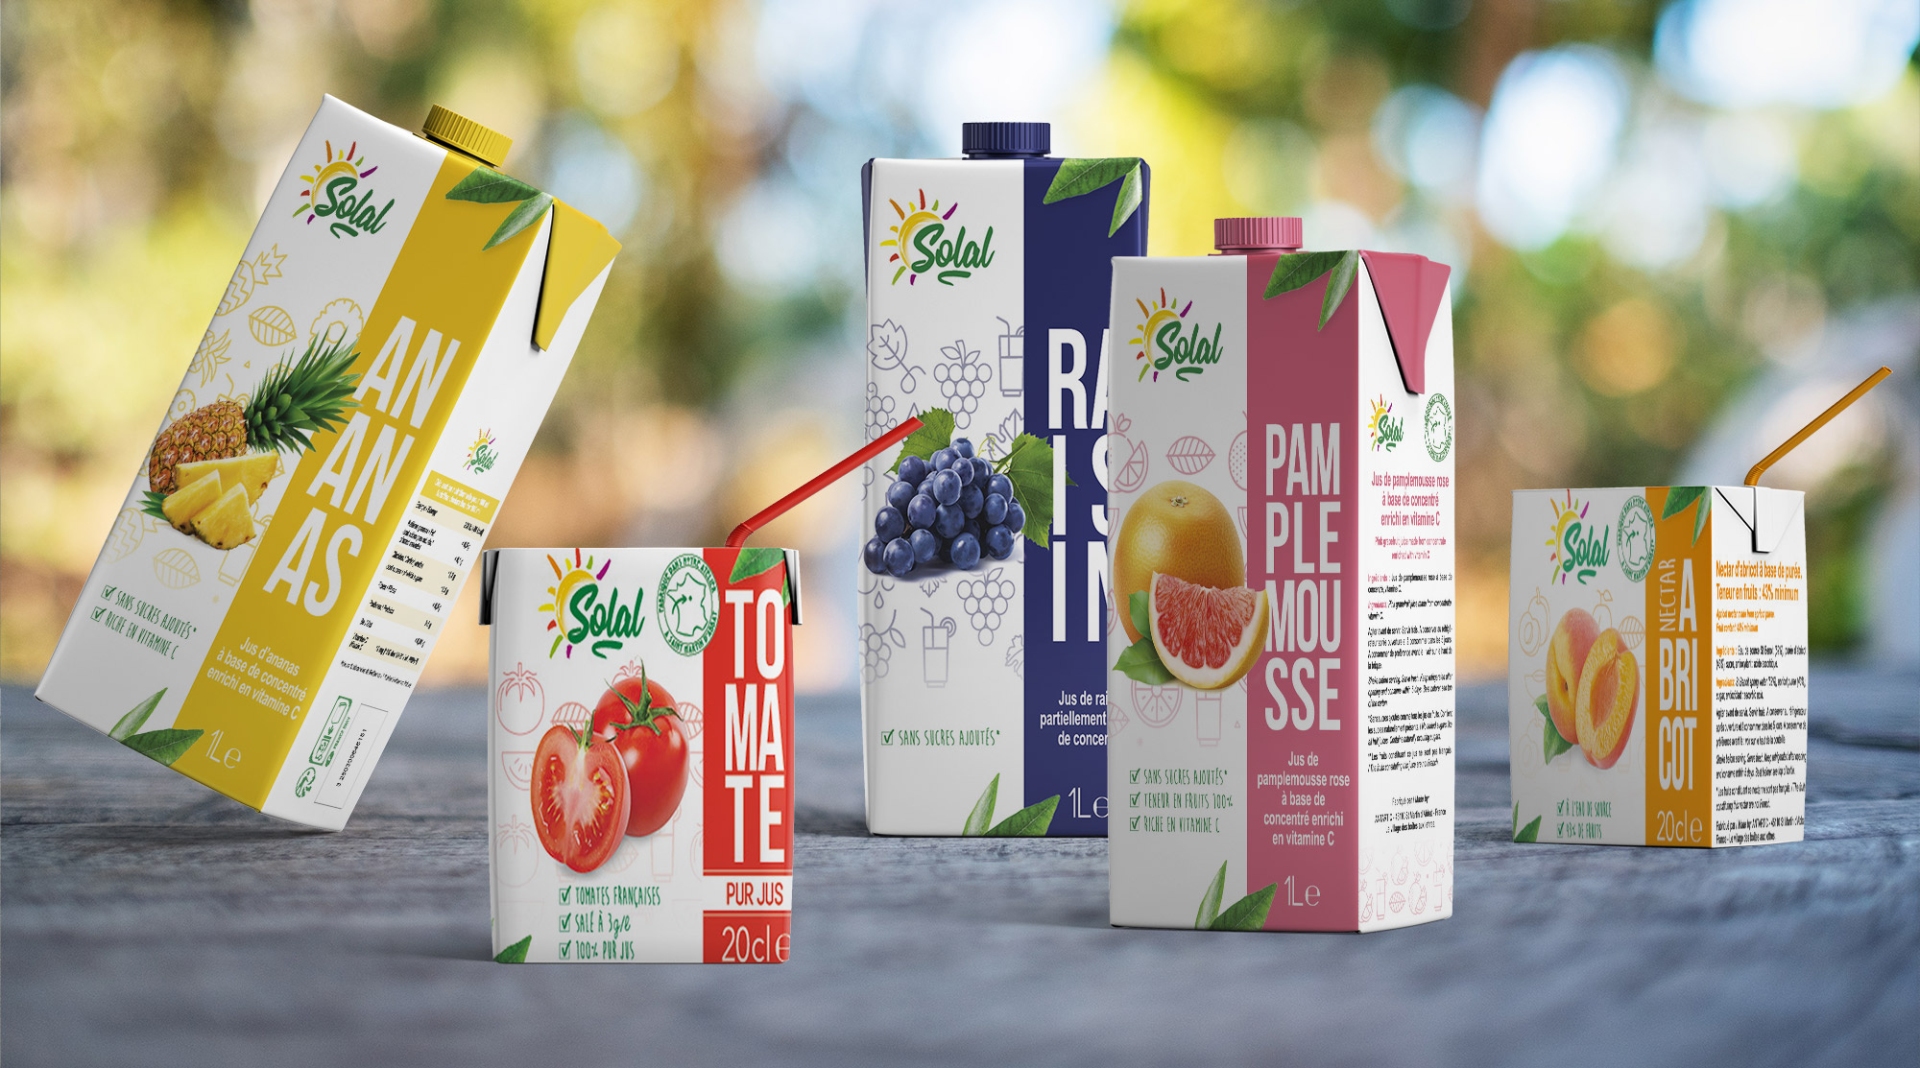 Image de couverture de la Story client Antartic - Packaging de jus de fruits